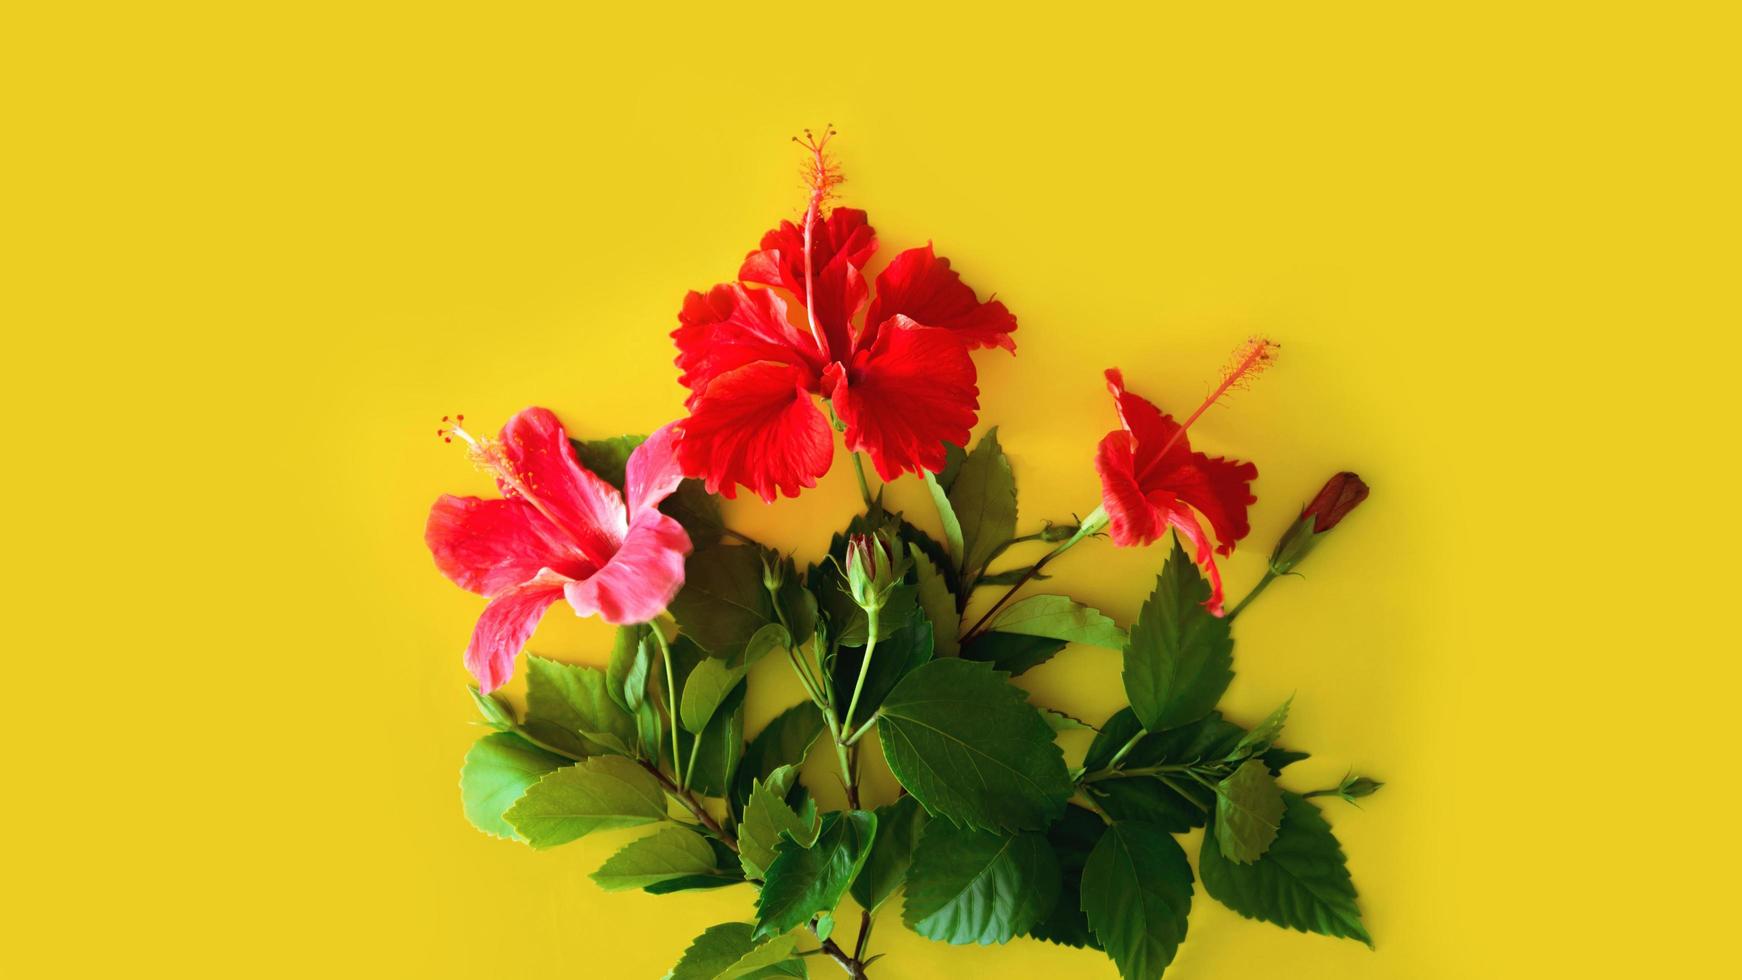 Satz tropischer Pflanzen und heller großer Blume des roten Hibiskus auf gelbem Hintergrund. Konzept Postkarte rote Blume Hibiskus. Sommer foto